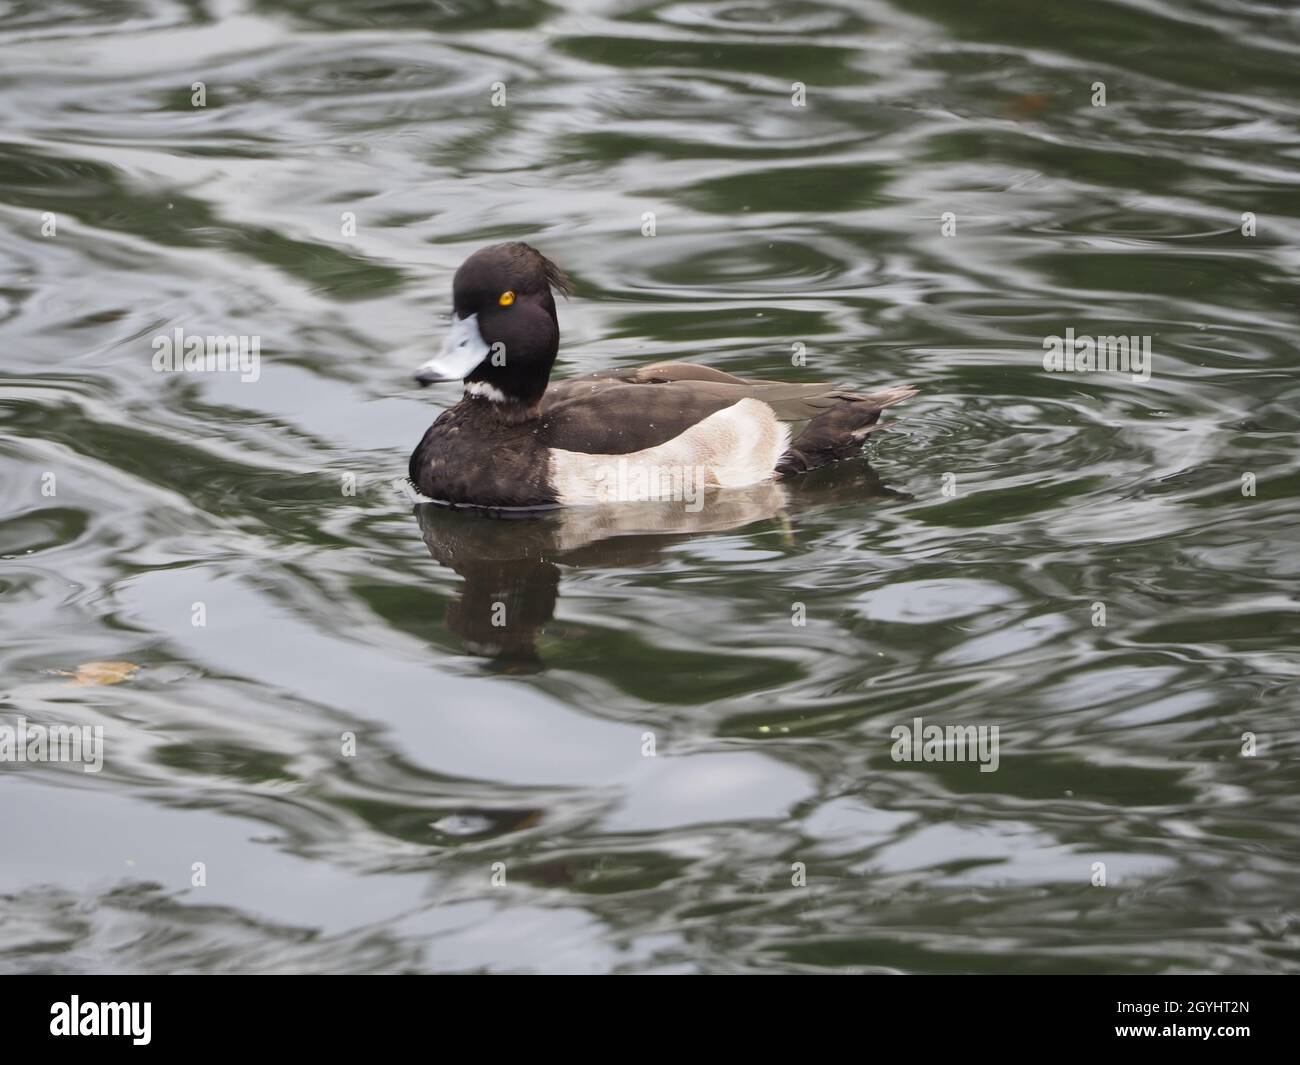 Le canard touffeté ou le pomchard touffeté s'assit calmement sur l'eau d'un étang urbain Banque D'Images